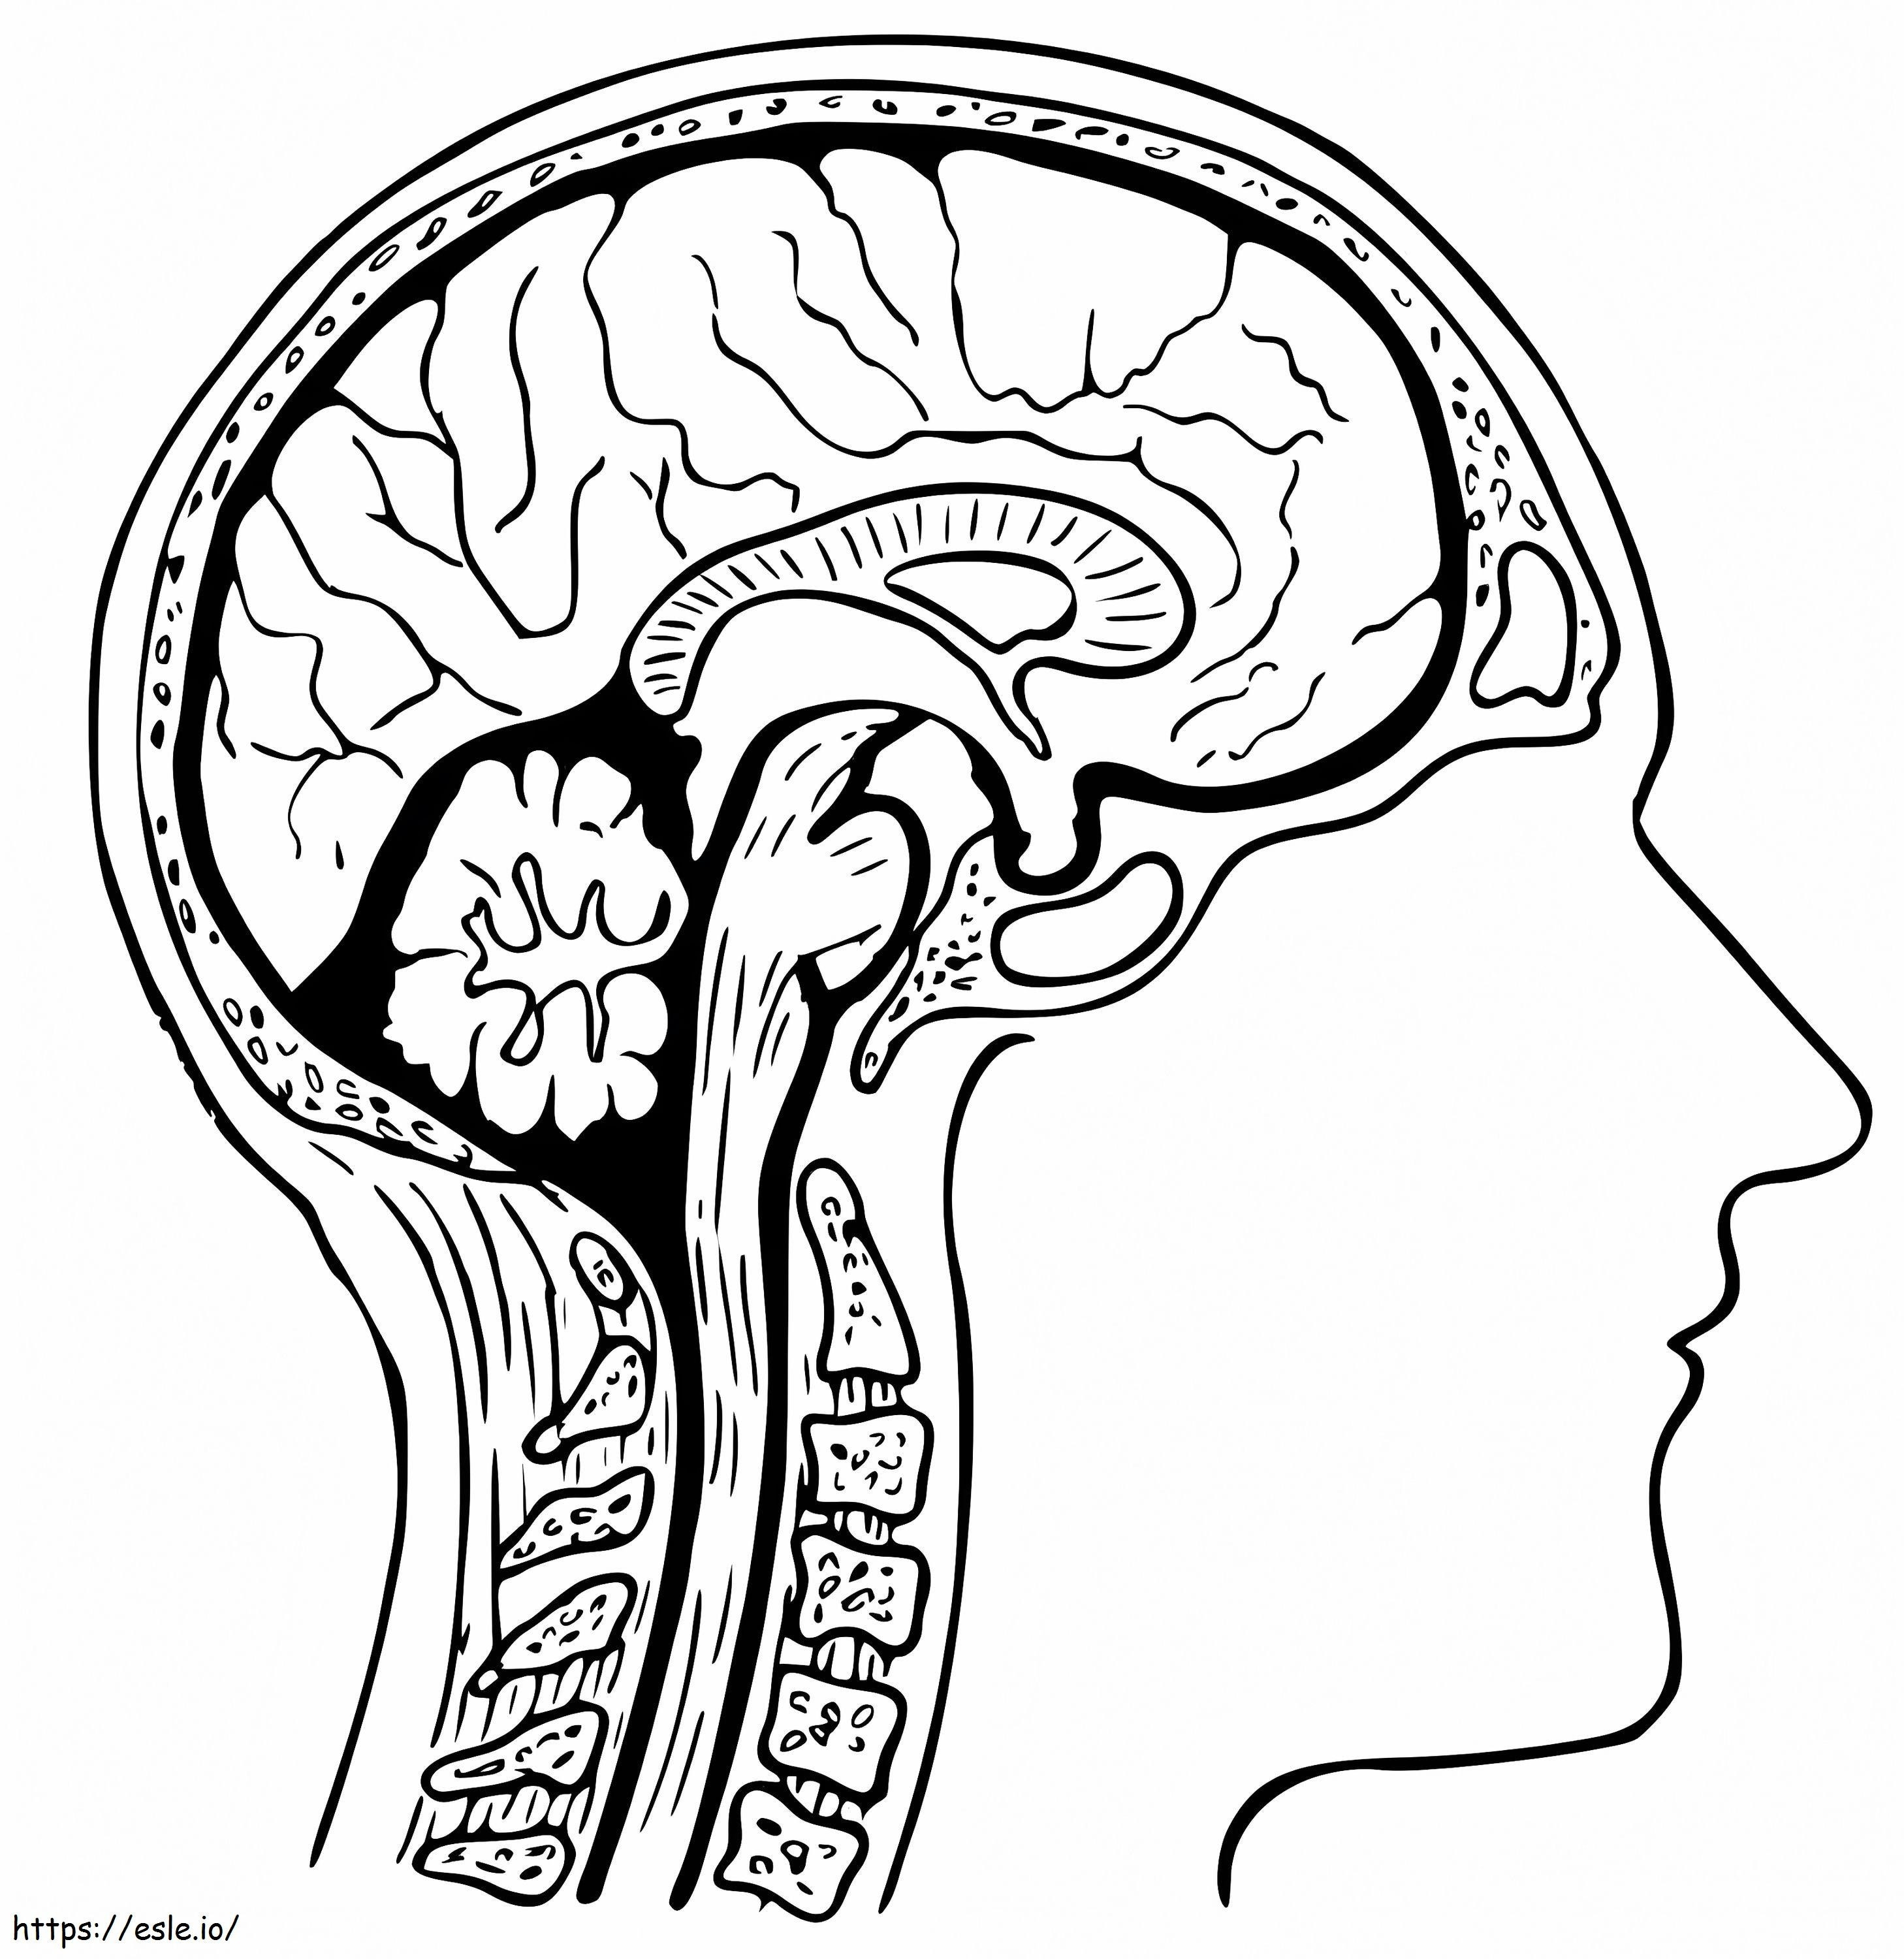 Menschliches Gehirn 2 ausmalbilder